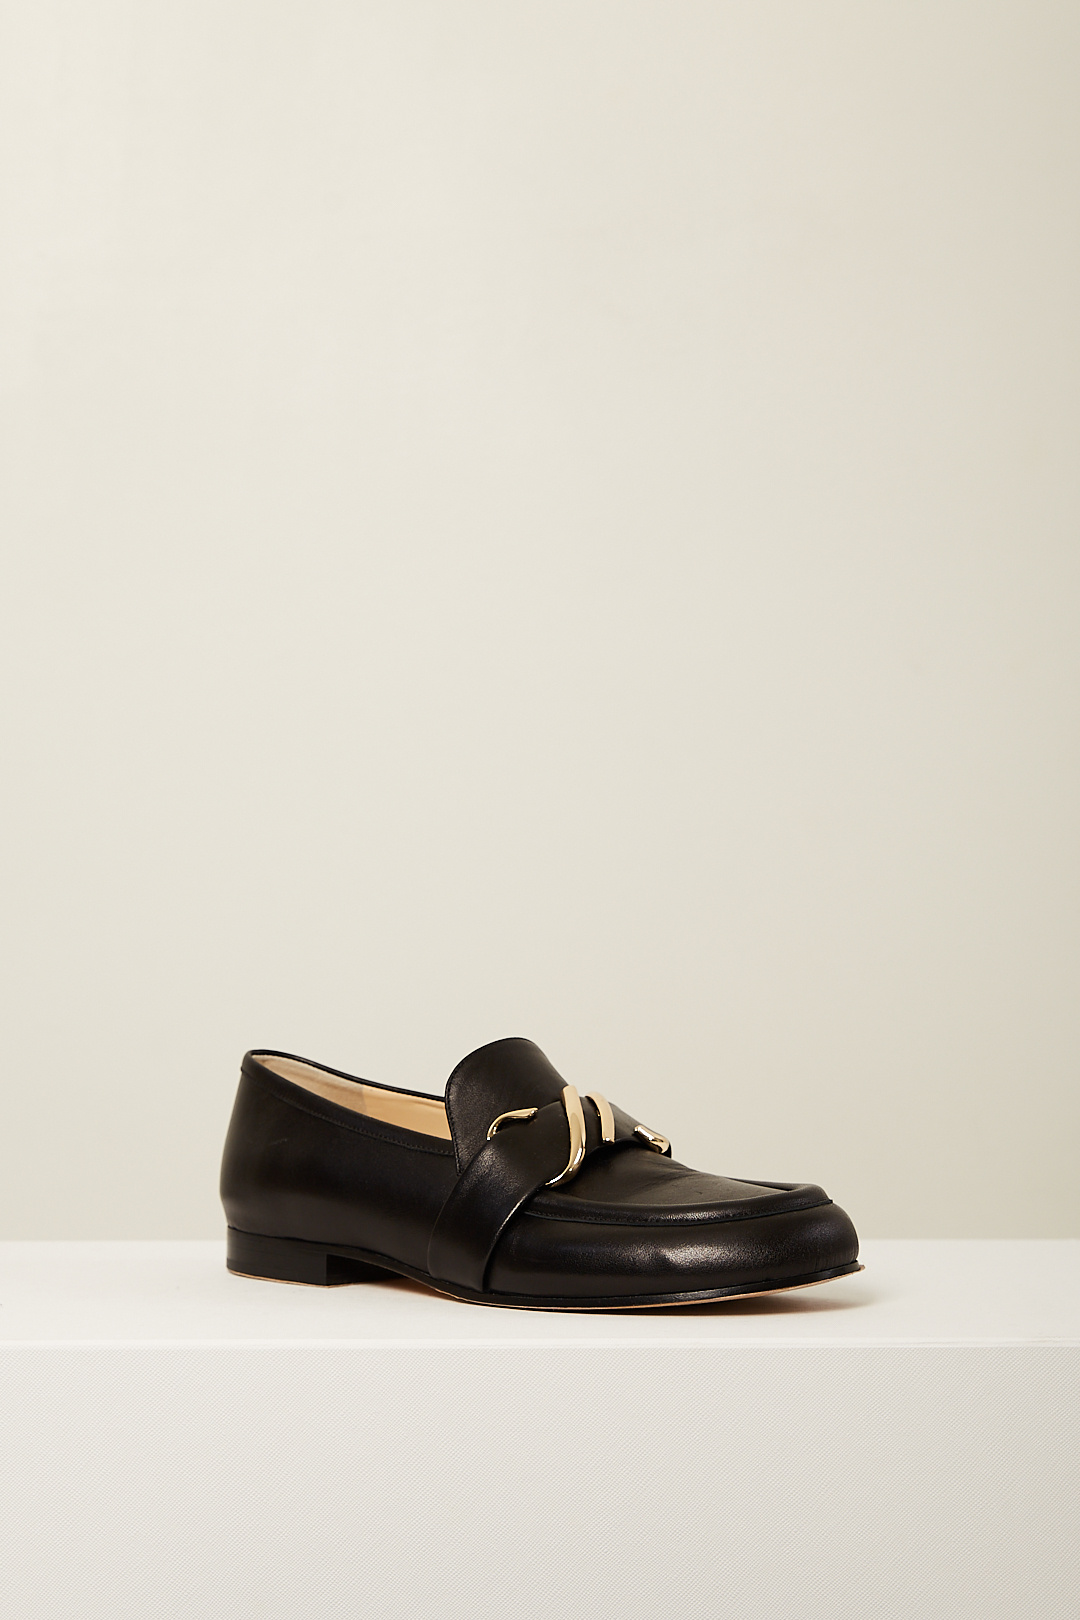 Proenza Schouler - 015NOEL loafers